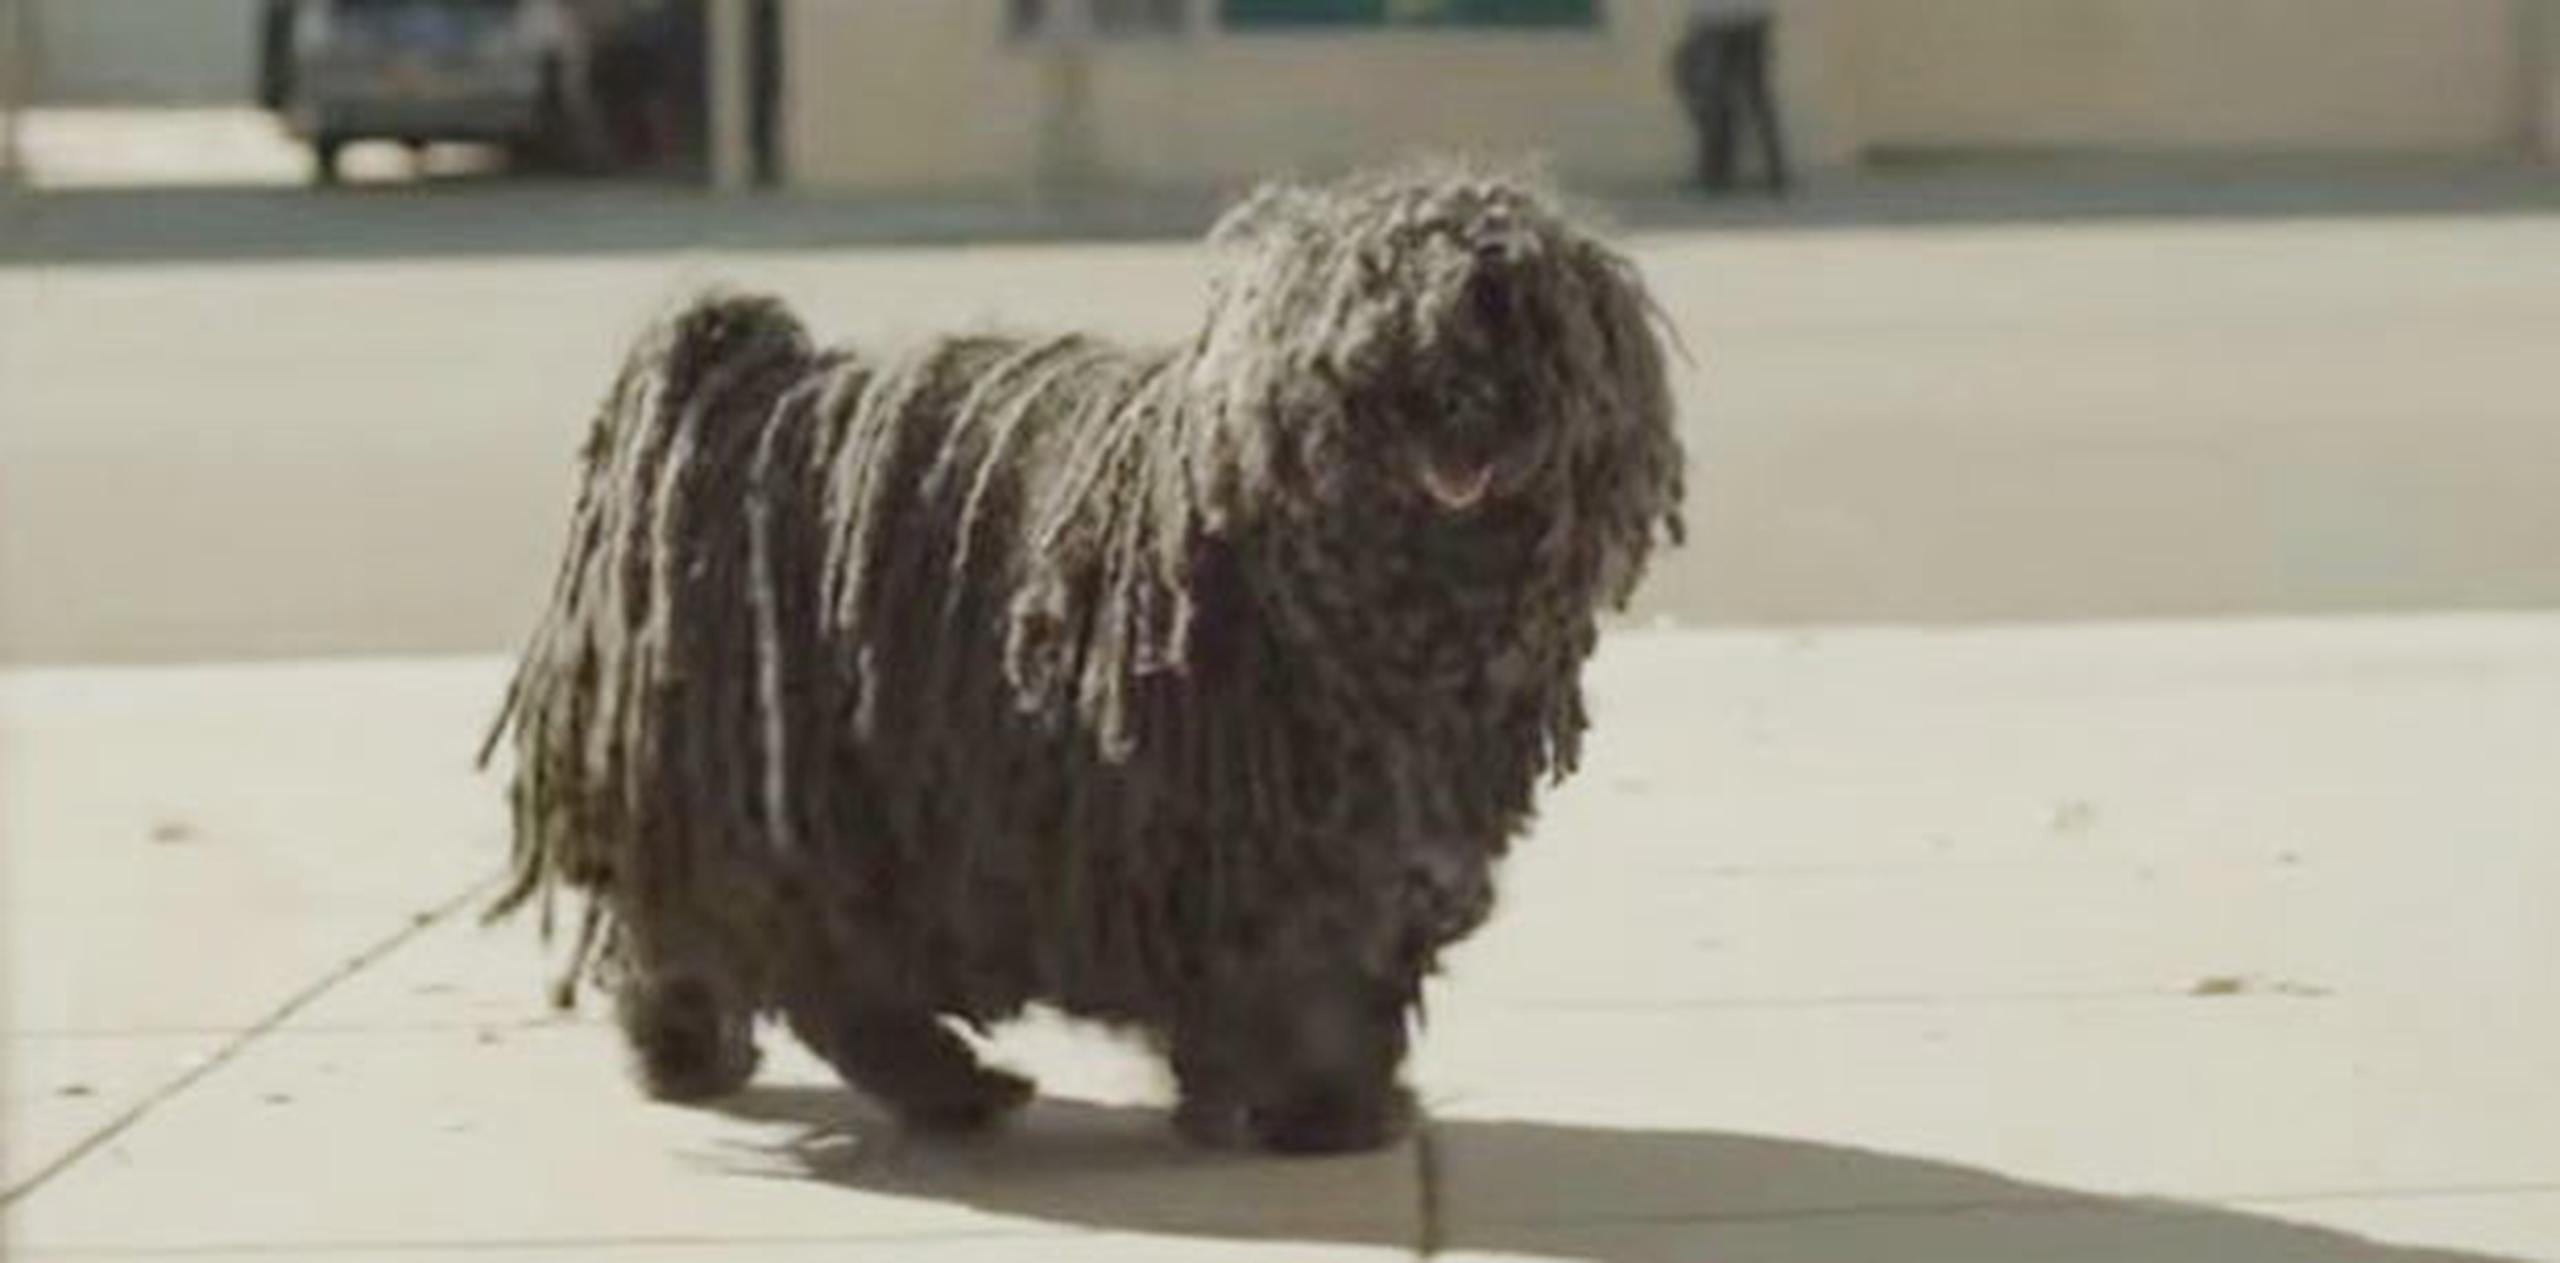 En el vídeo se sugiere que el perrito es adoptado por el repartidor de refresco. (YouTube)